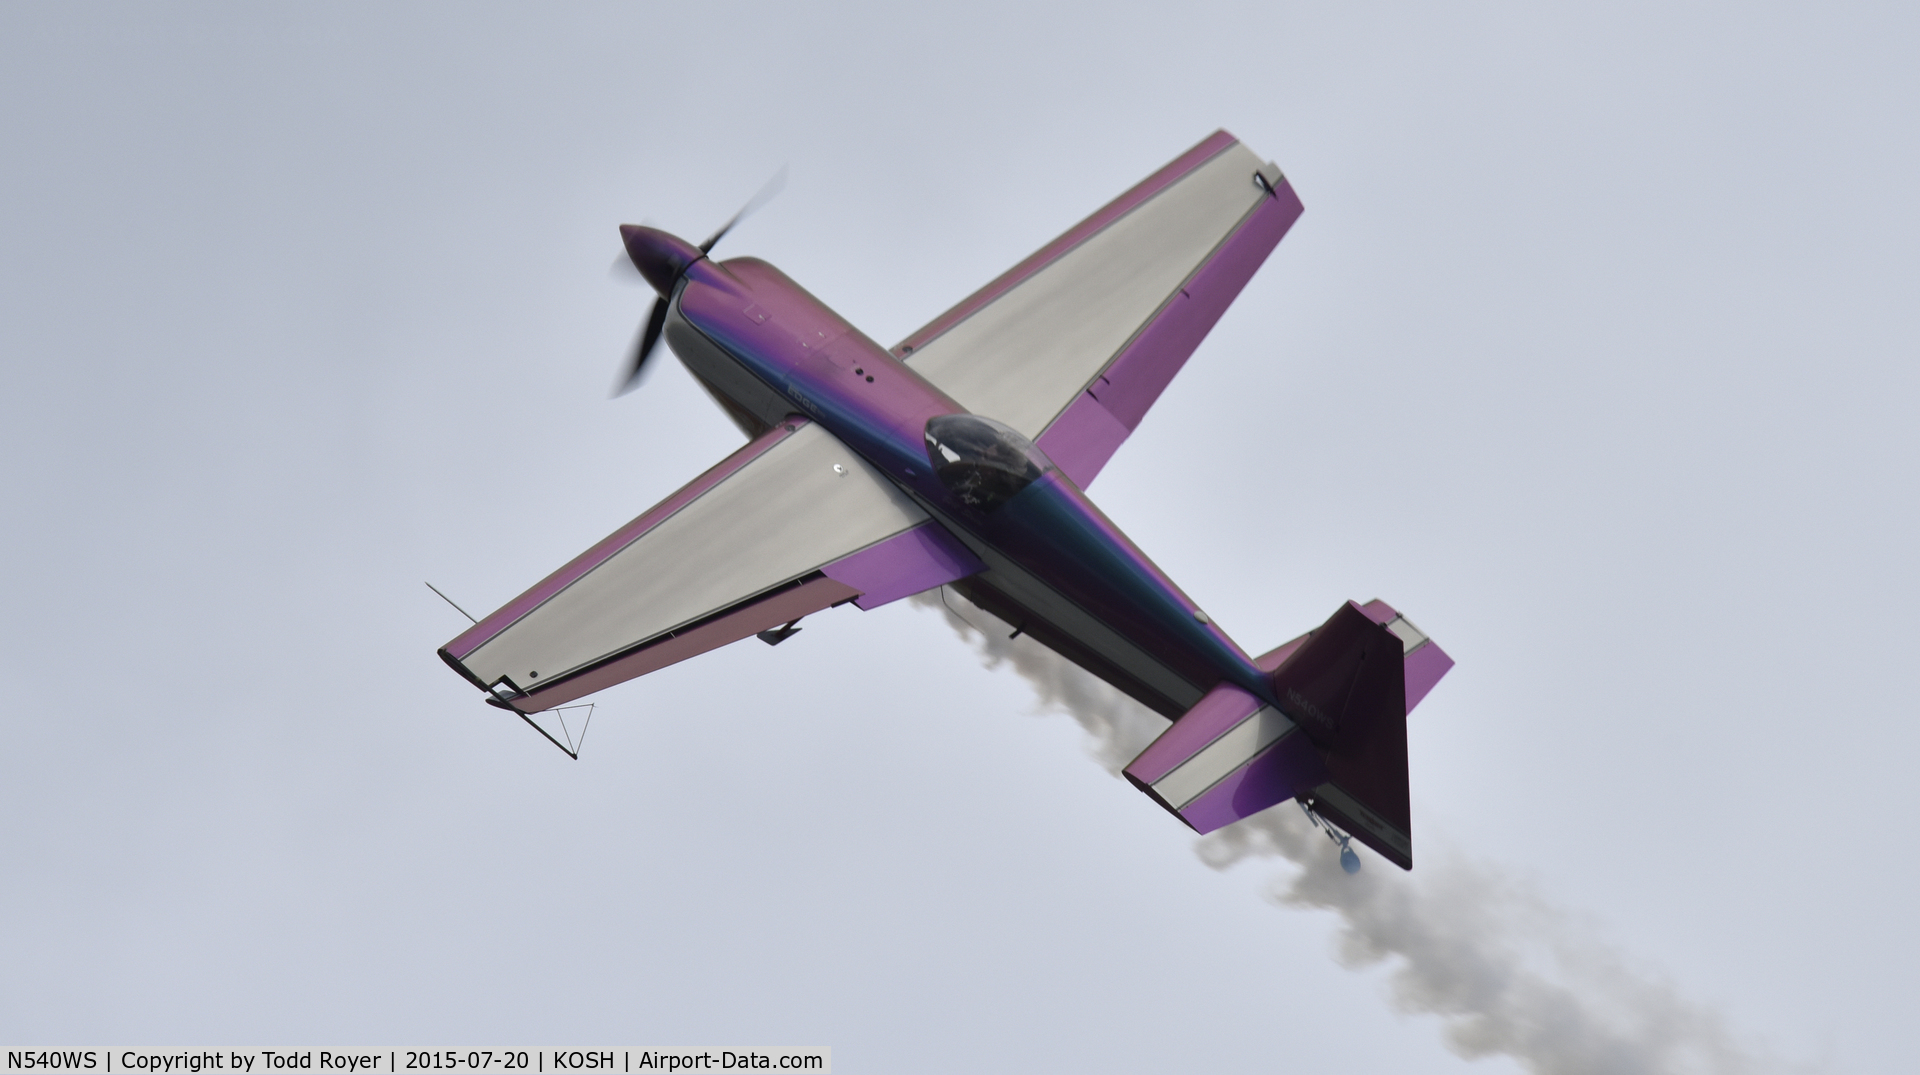 N540WS, 2002 Zivko Edge 540 C/N 0032, Airventure 2015